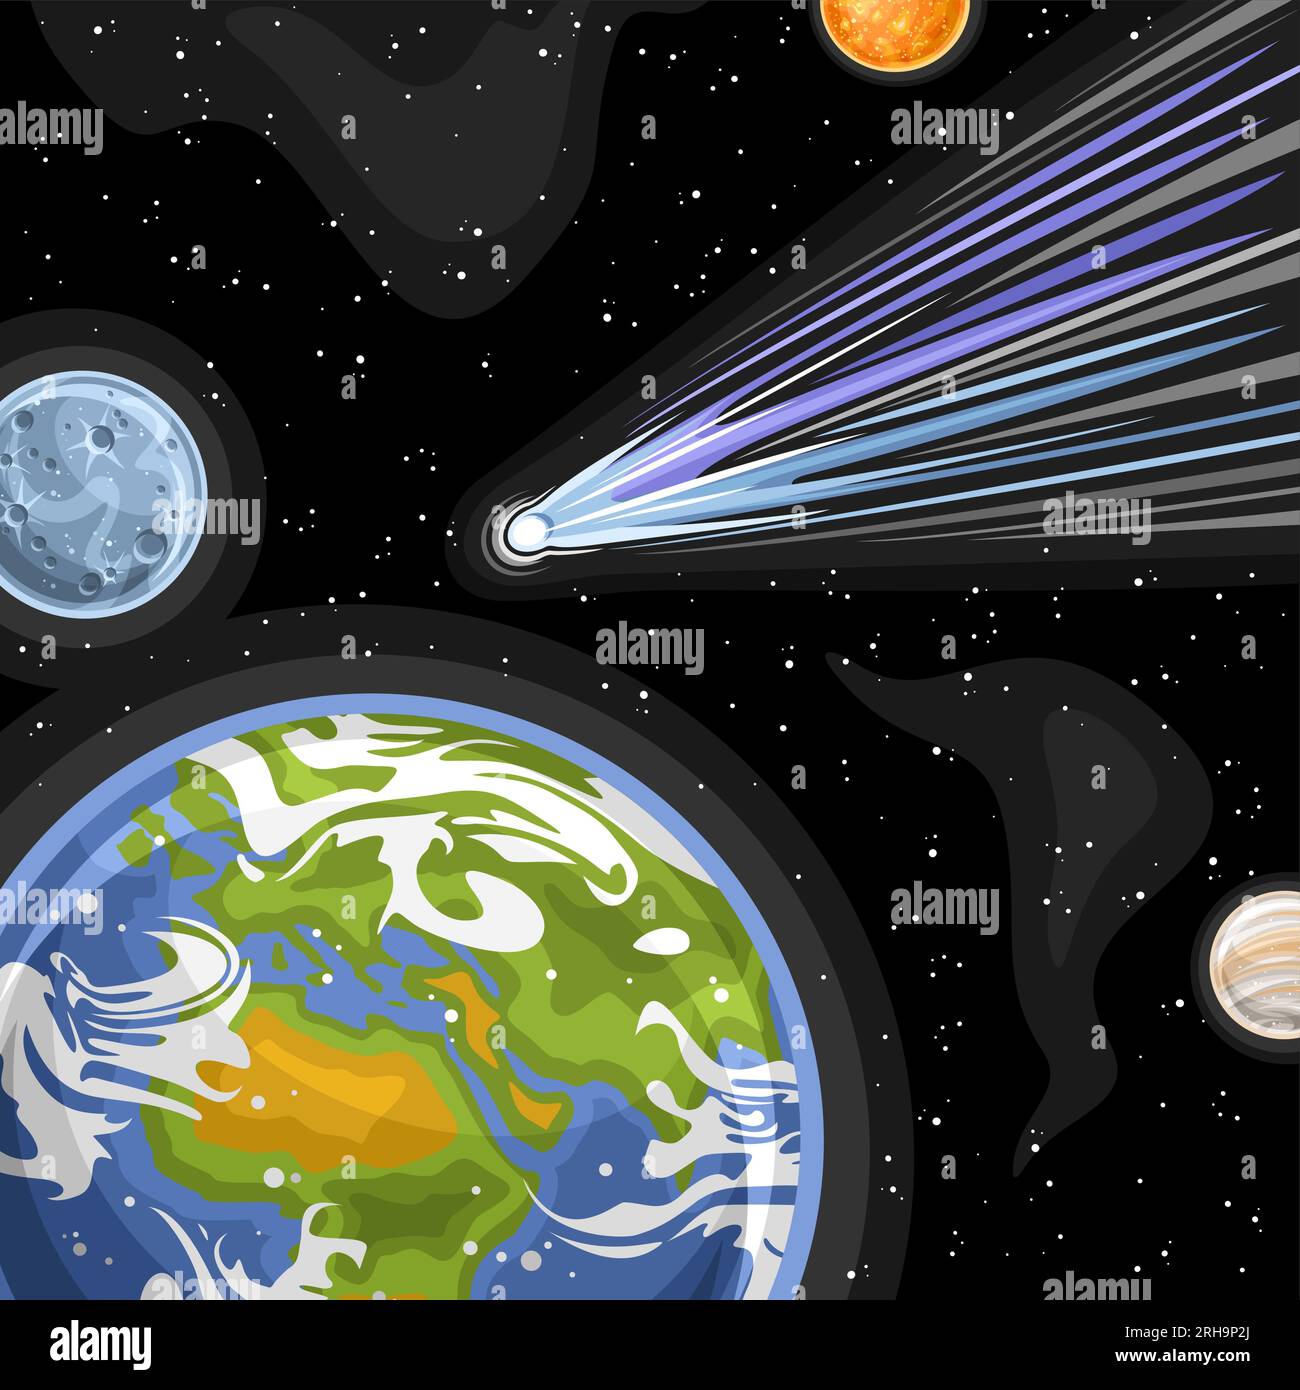 Vektordarstellung des fallenden Kometen, quadratisches, astronomisches Poster mit Cartoon-Design, das blauen Eiskometen in Erde und Mond schießt, dekorativ futuristisch Stock Vektor